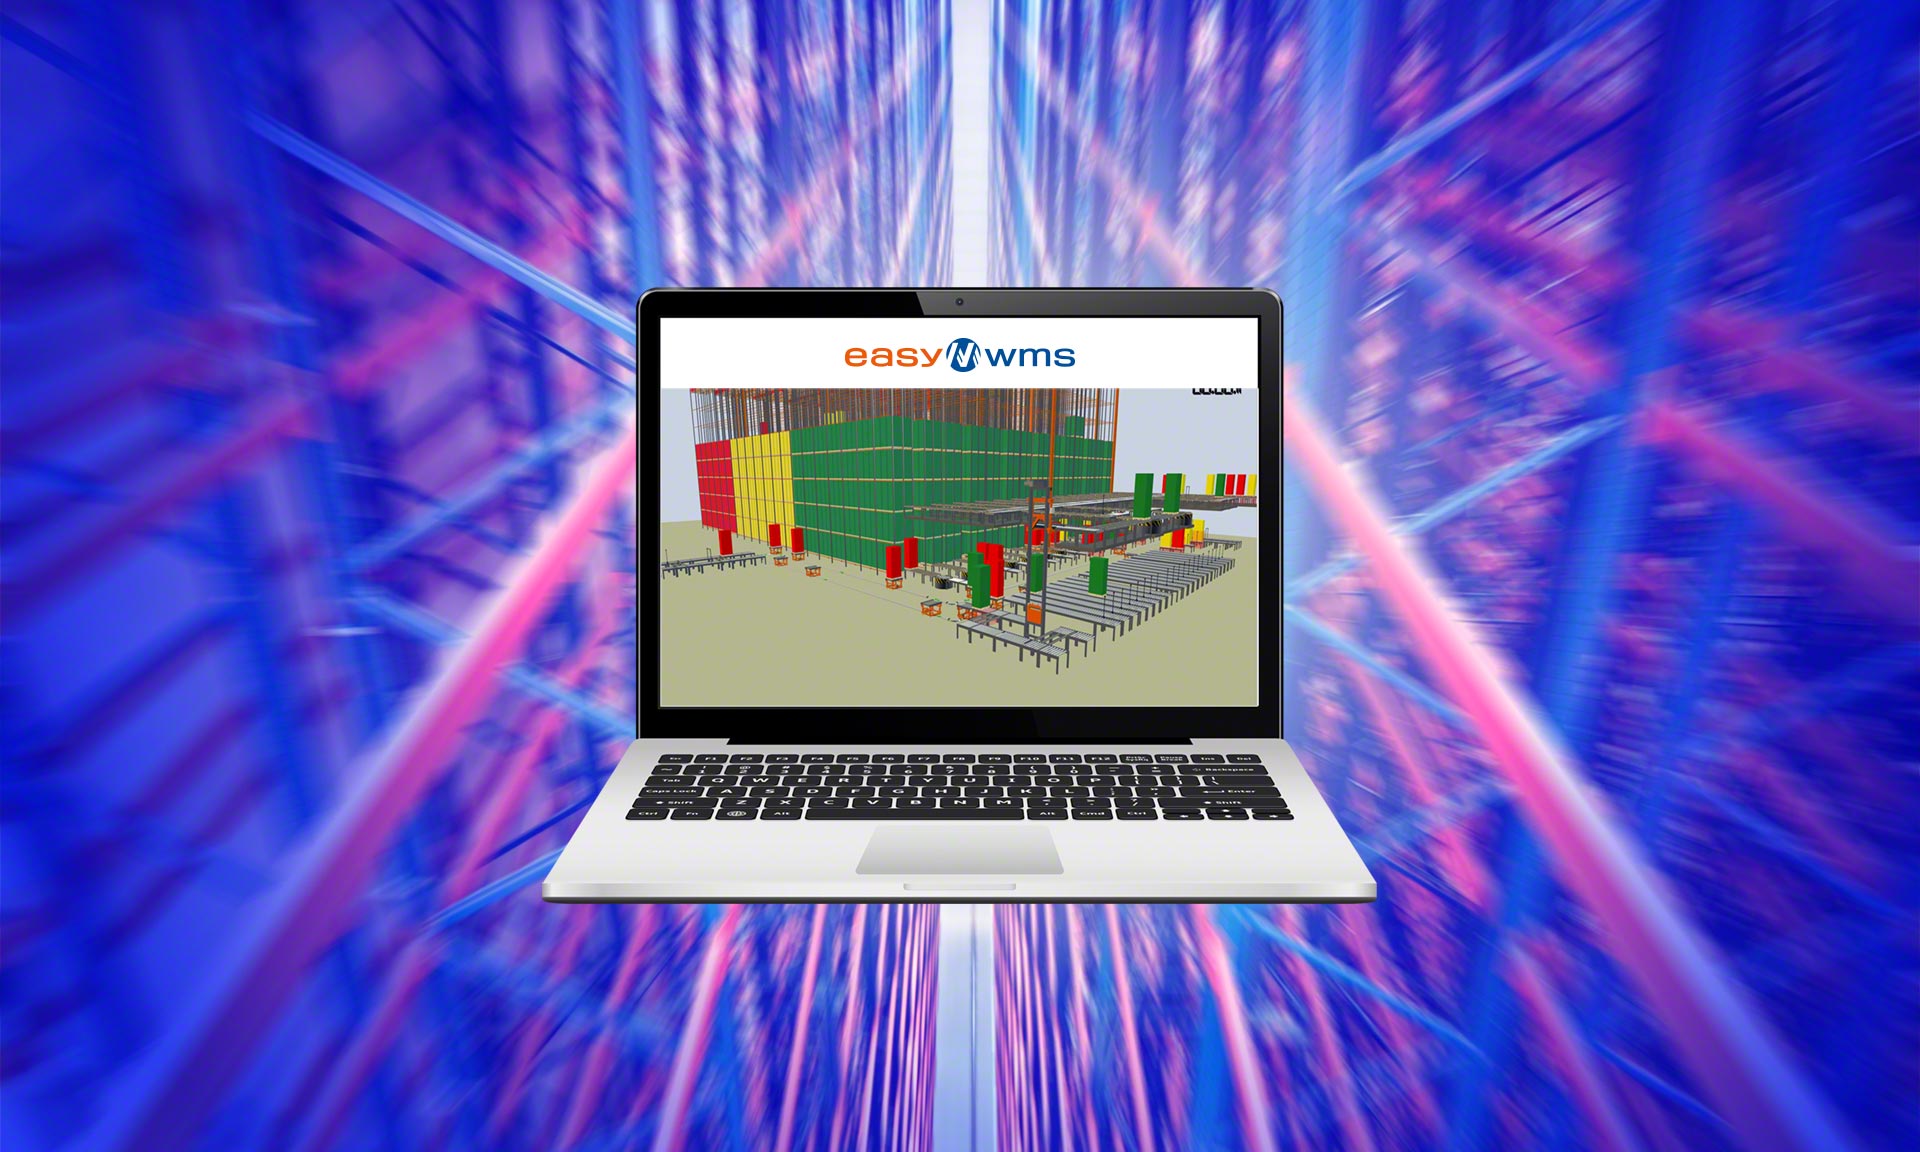 De 3D-weergave van het magazijn is een van de voorbeelden van digital twins die worden toegepast in de logistiek